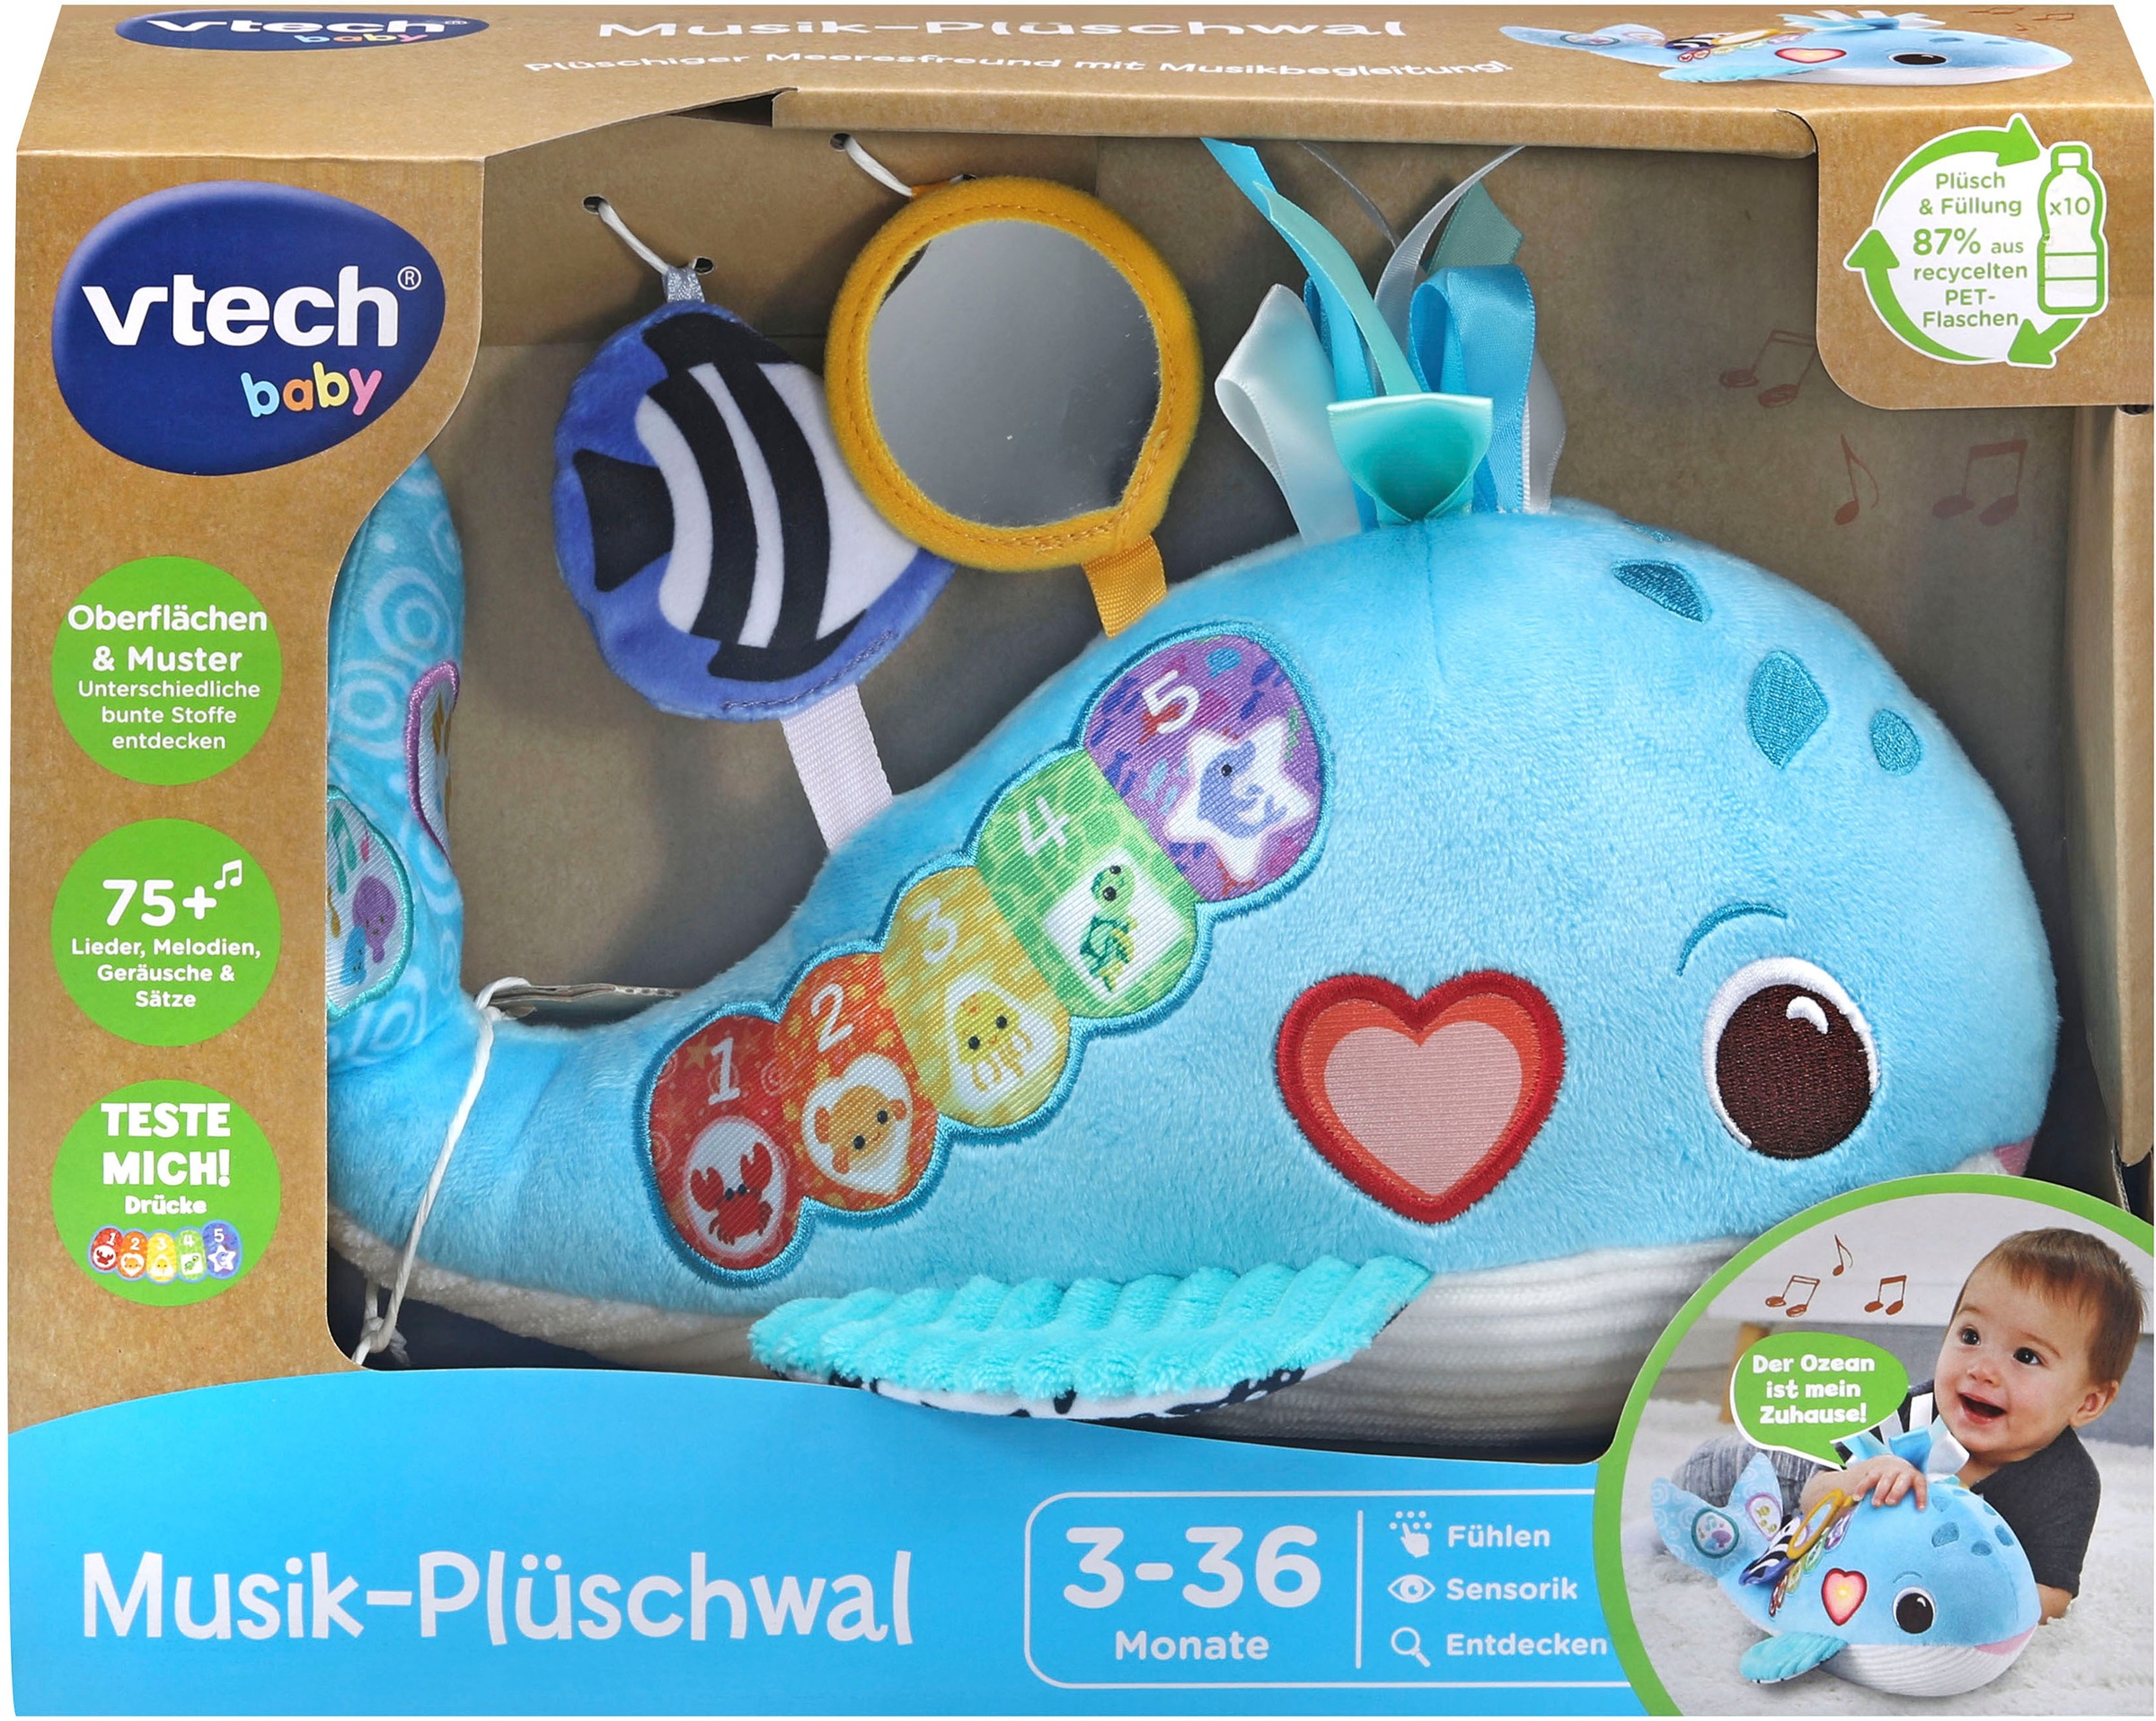 Musik-Plüschwal«, kaufen »Vtech im Baby, Plüschfigur aus recyceltem Online-Shop Vtech® Material